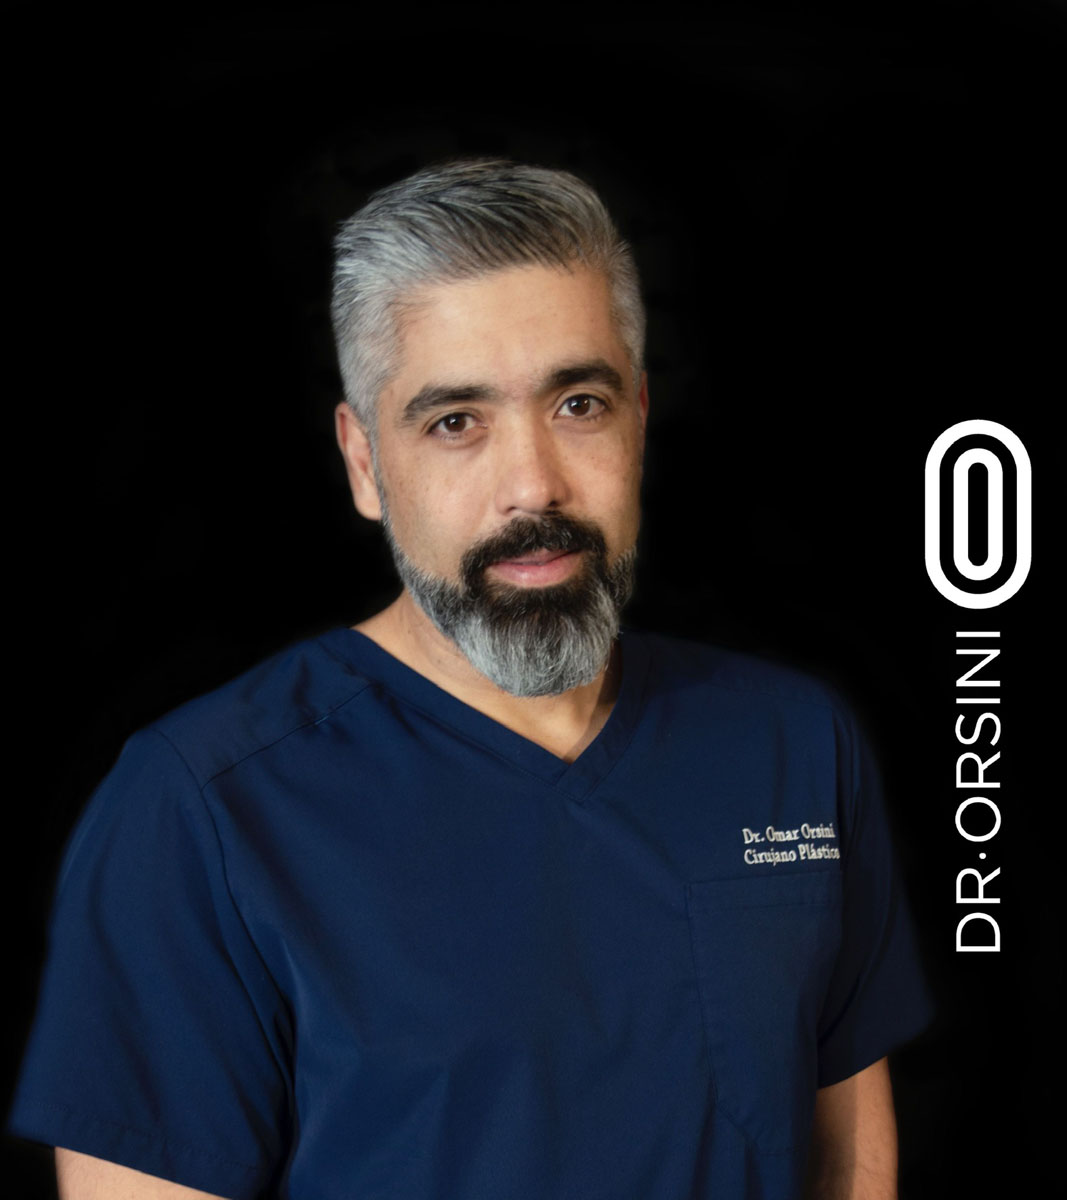 Dr. ORSINI L., OMAR E. (521)